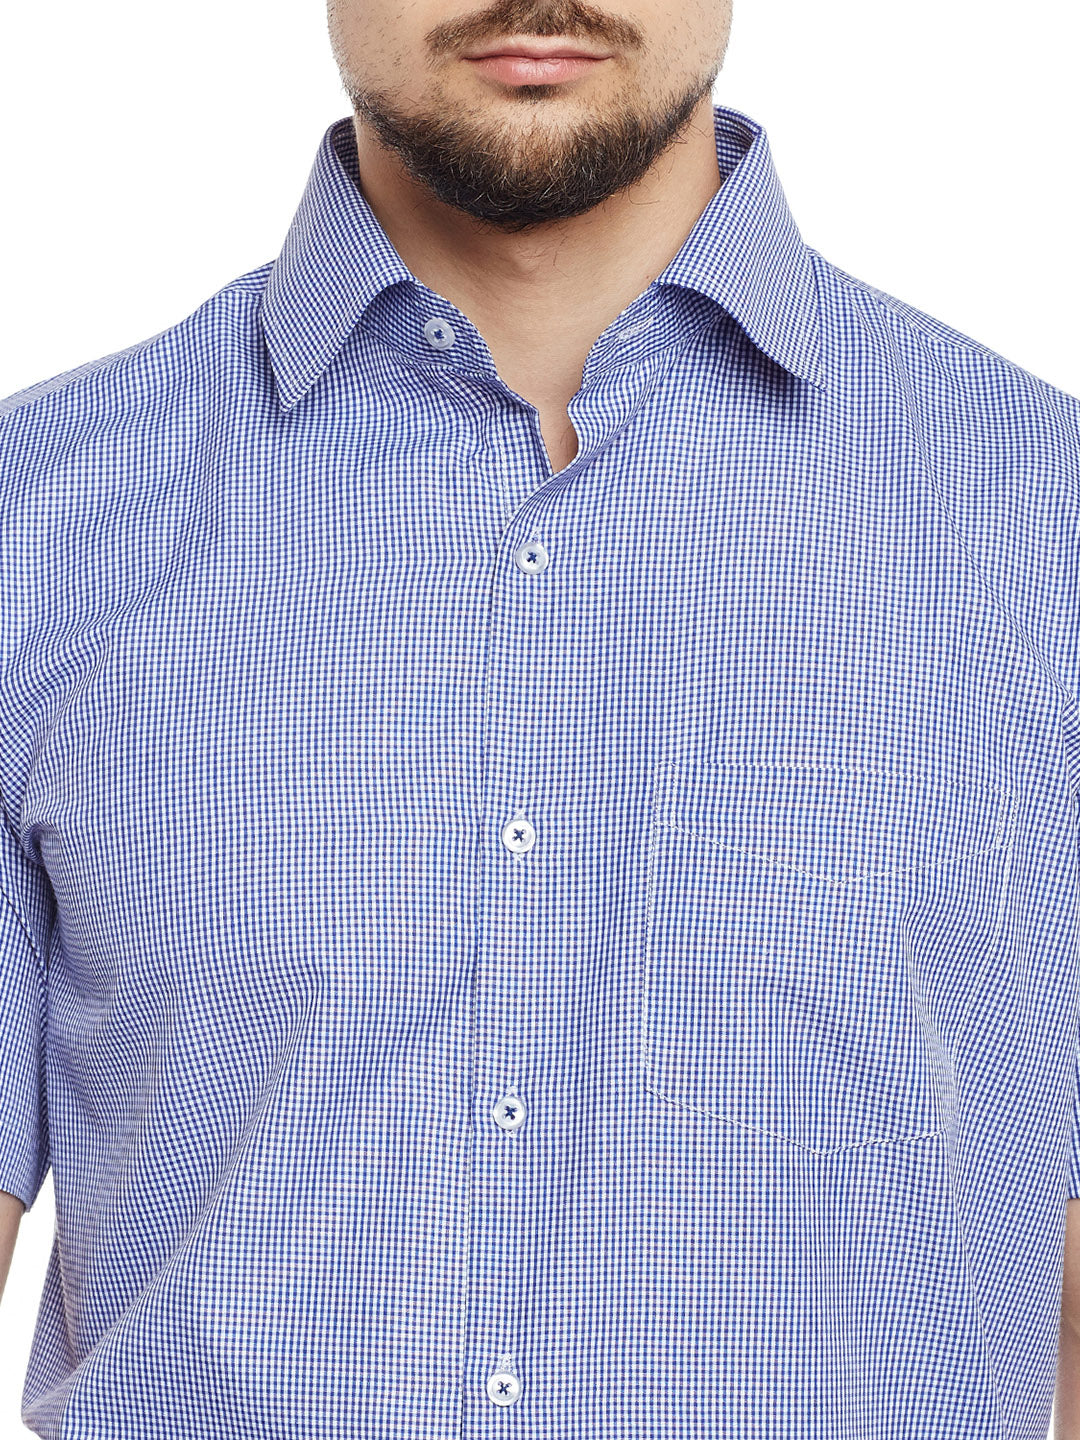 Men Blue & White Checked Regular Fit Formal Shirt